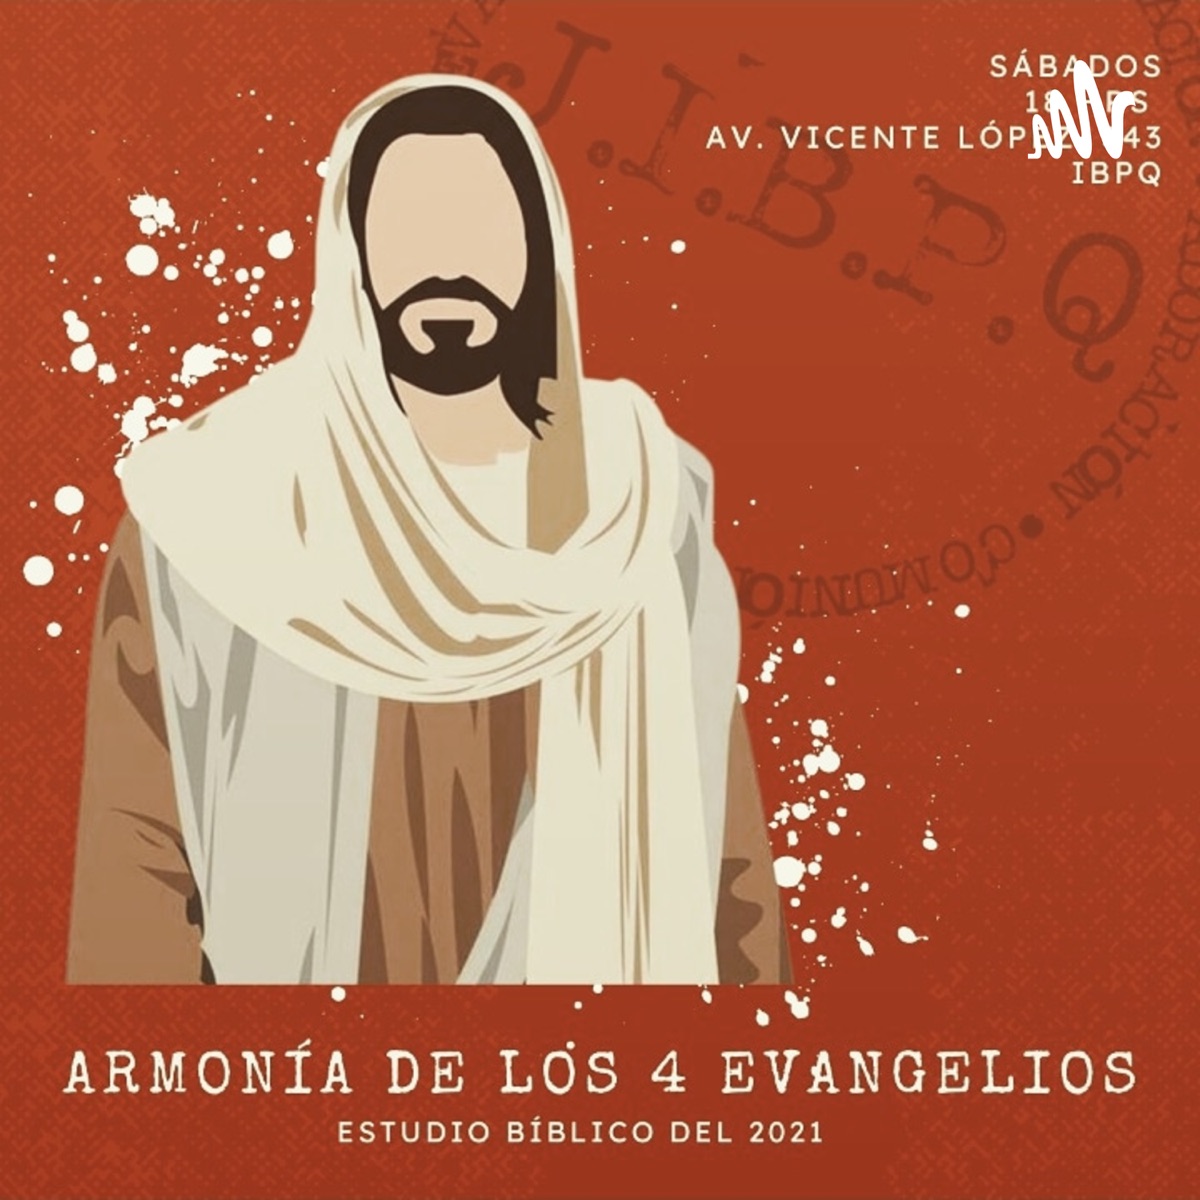 Armonía De Los 4 Evangelios Jibpq Podcast Mexico